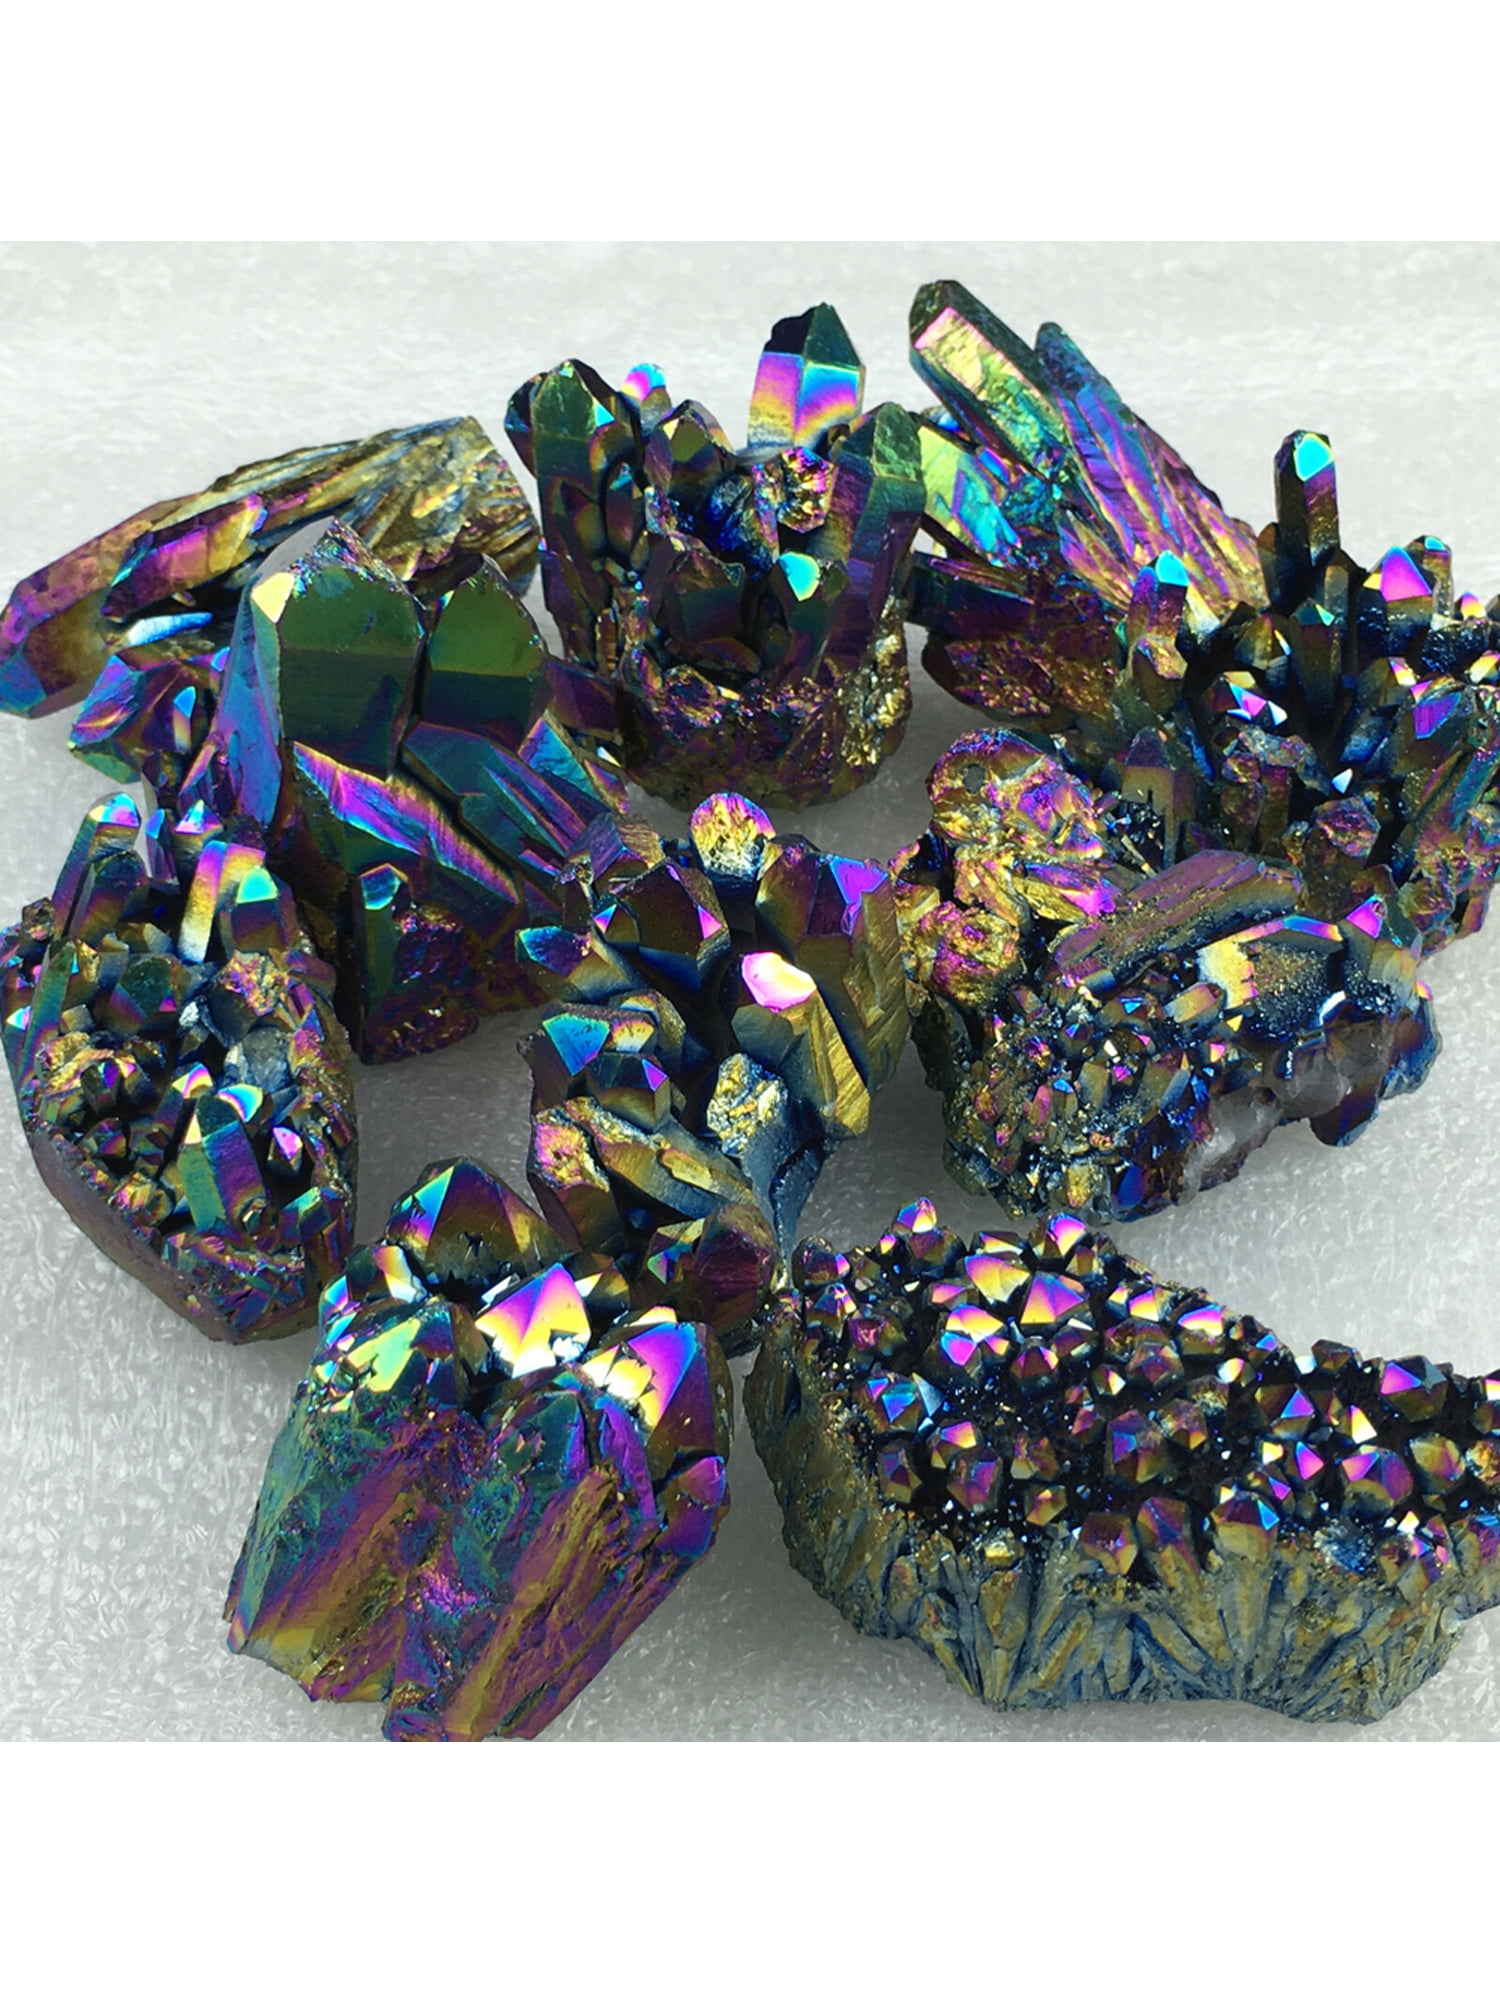 Natural Quartz Crystal Rainbow Titanium Cluster Mineral Specimen Healing Stone 